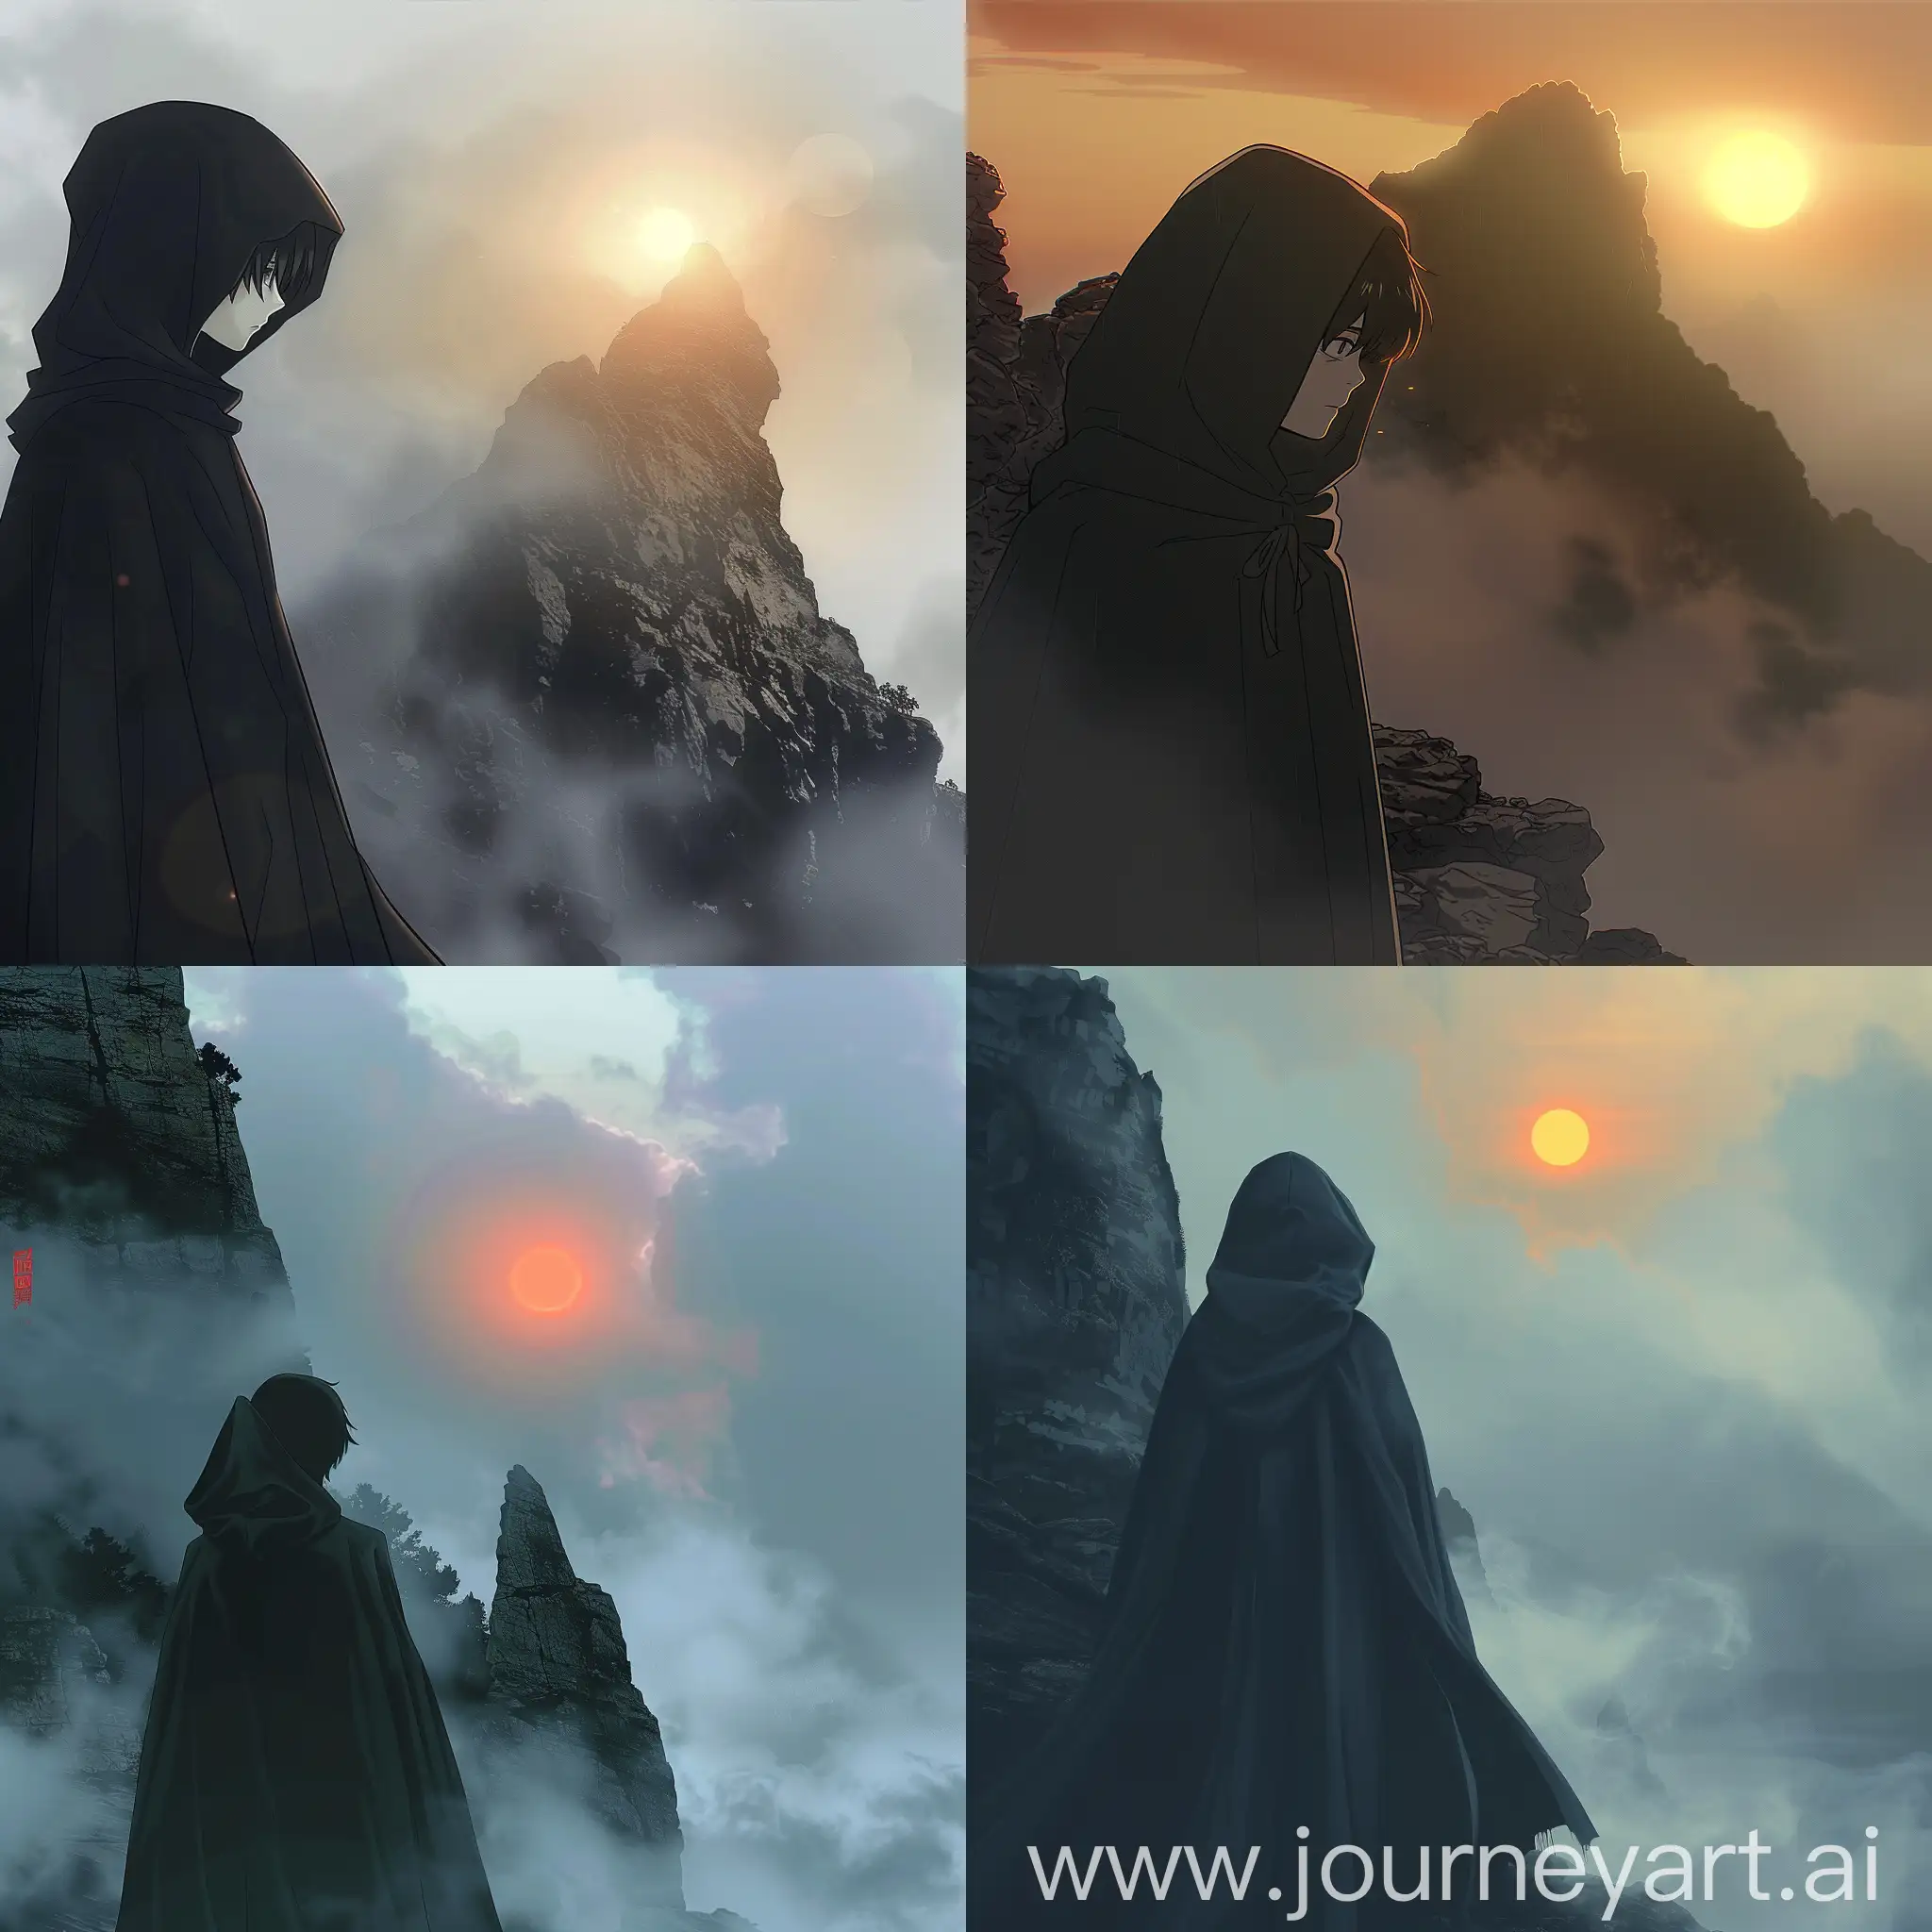 Mysterious-Anime-Boy-in-Dark-Cloak-against-Foggy-Mountain-Sunset